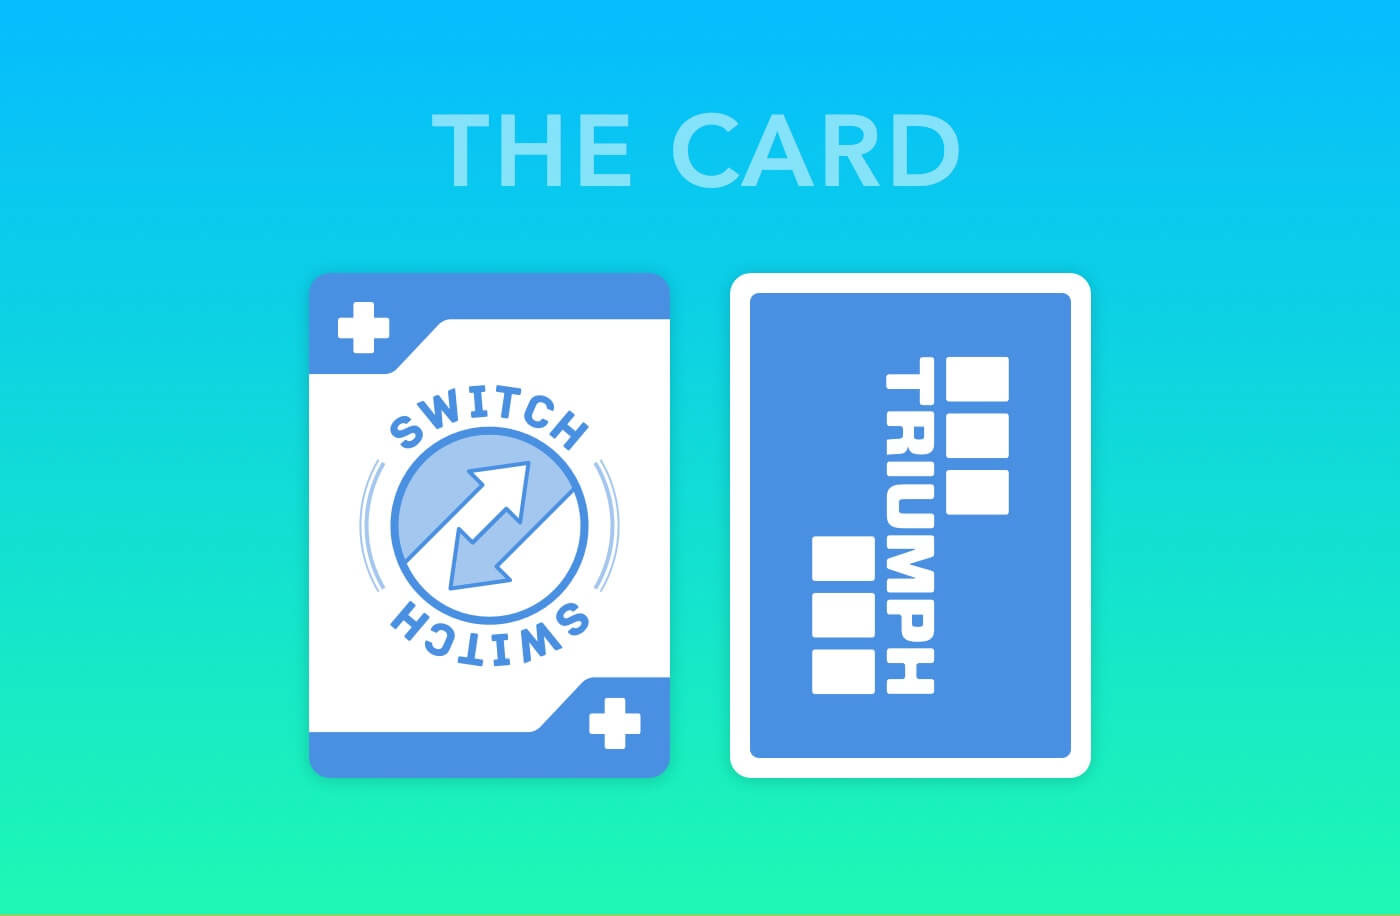 card game card cards Kickstarter tic tac toe suit card suit